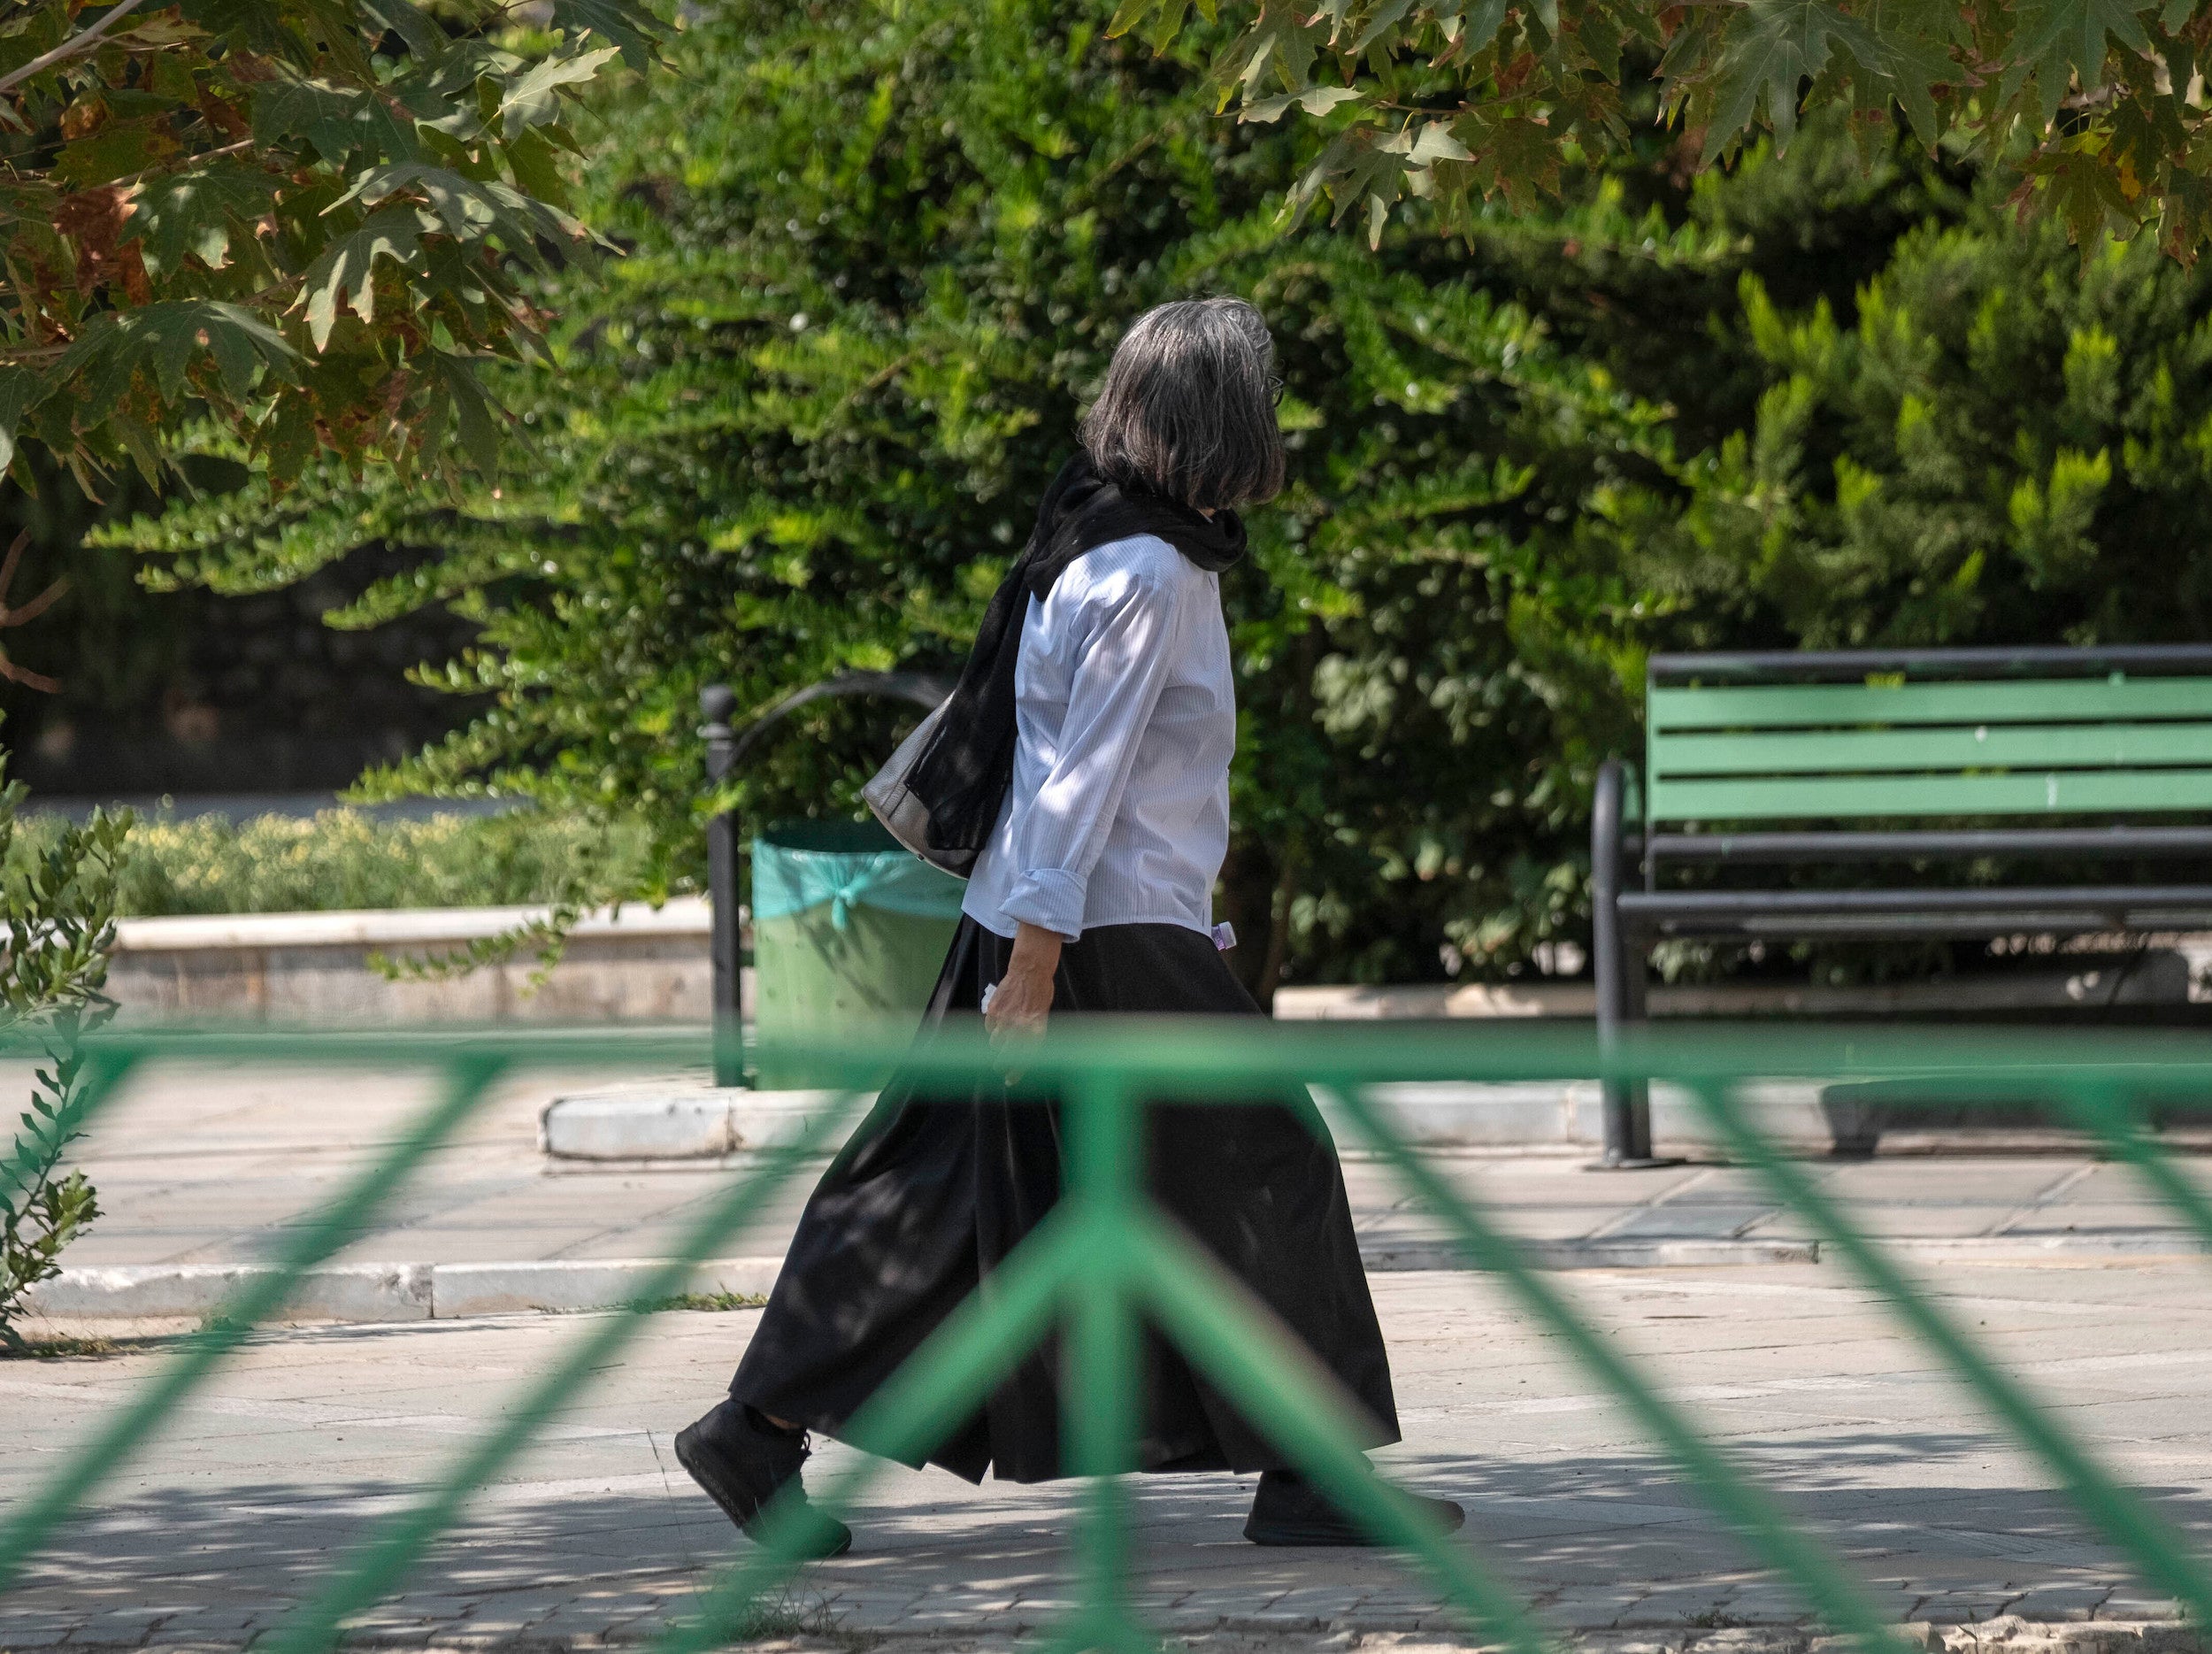 Una anciana iraní camina por una calle de Teherán sin llevar el hiyab en la cabeza